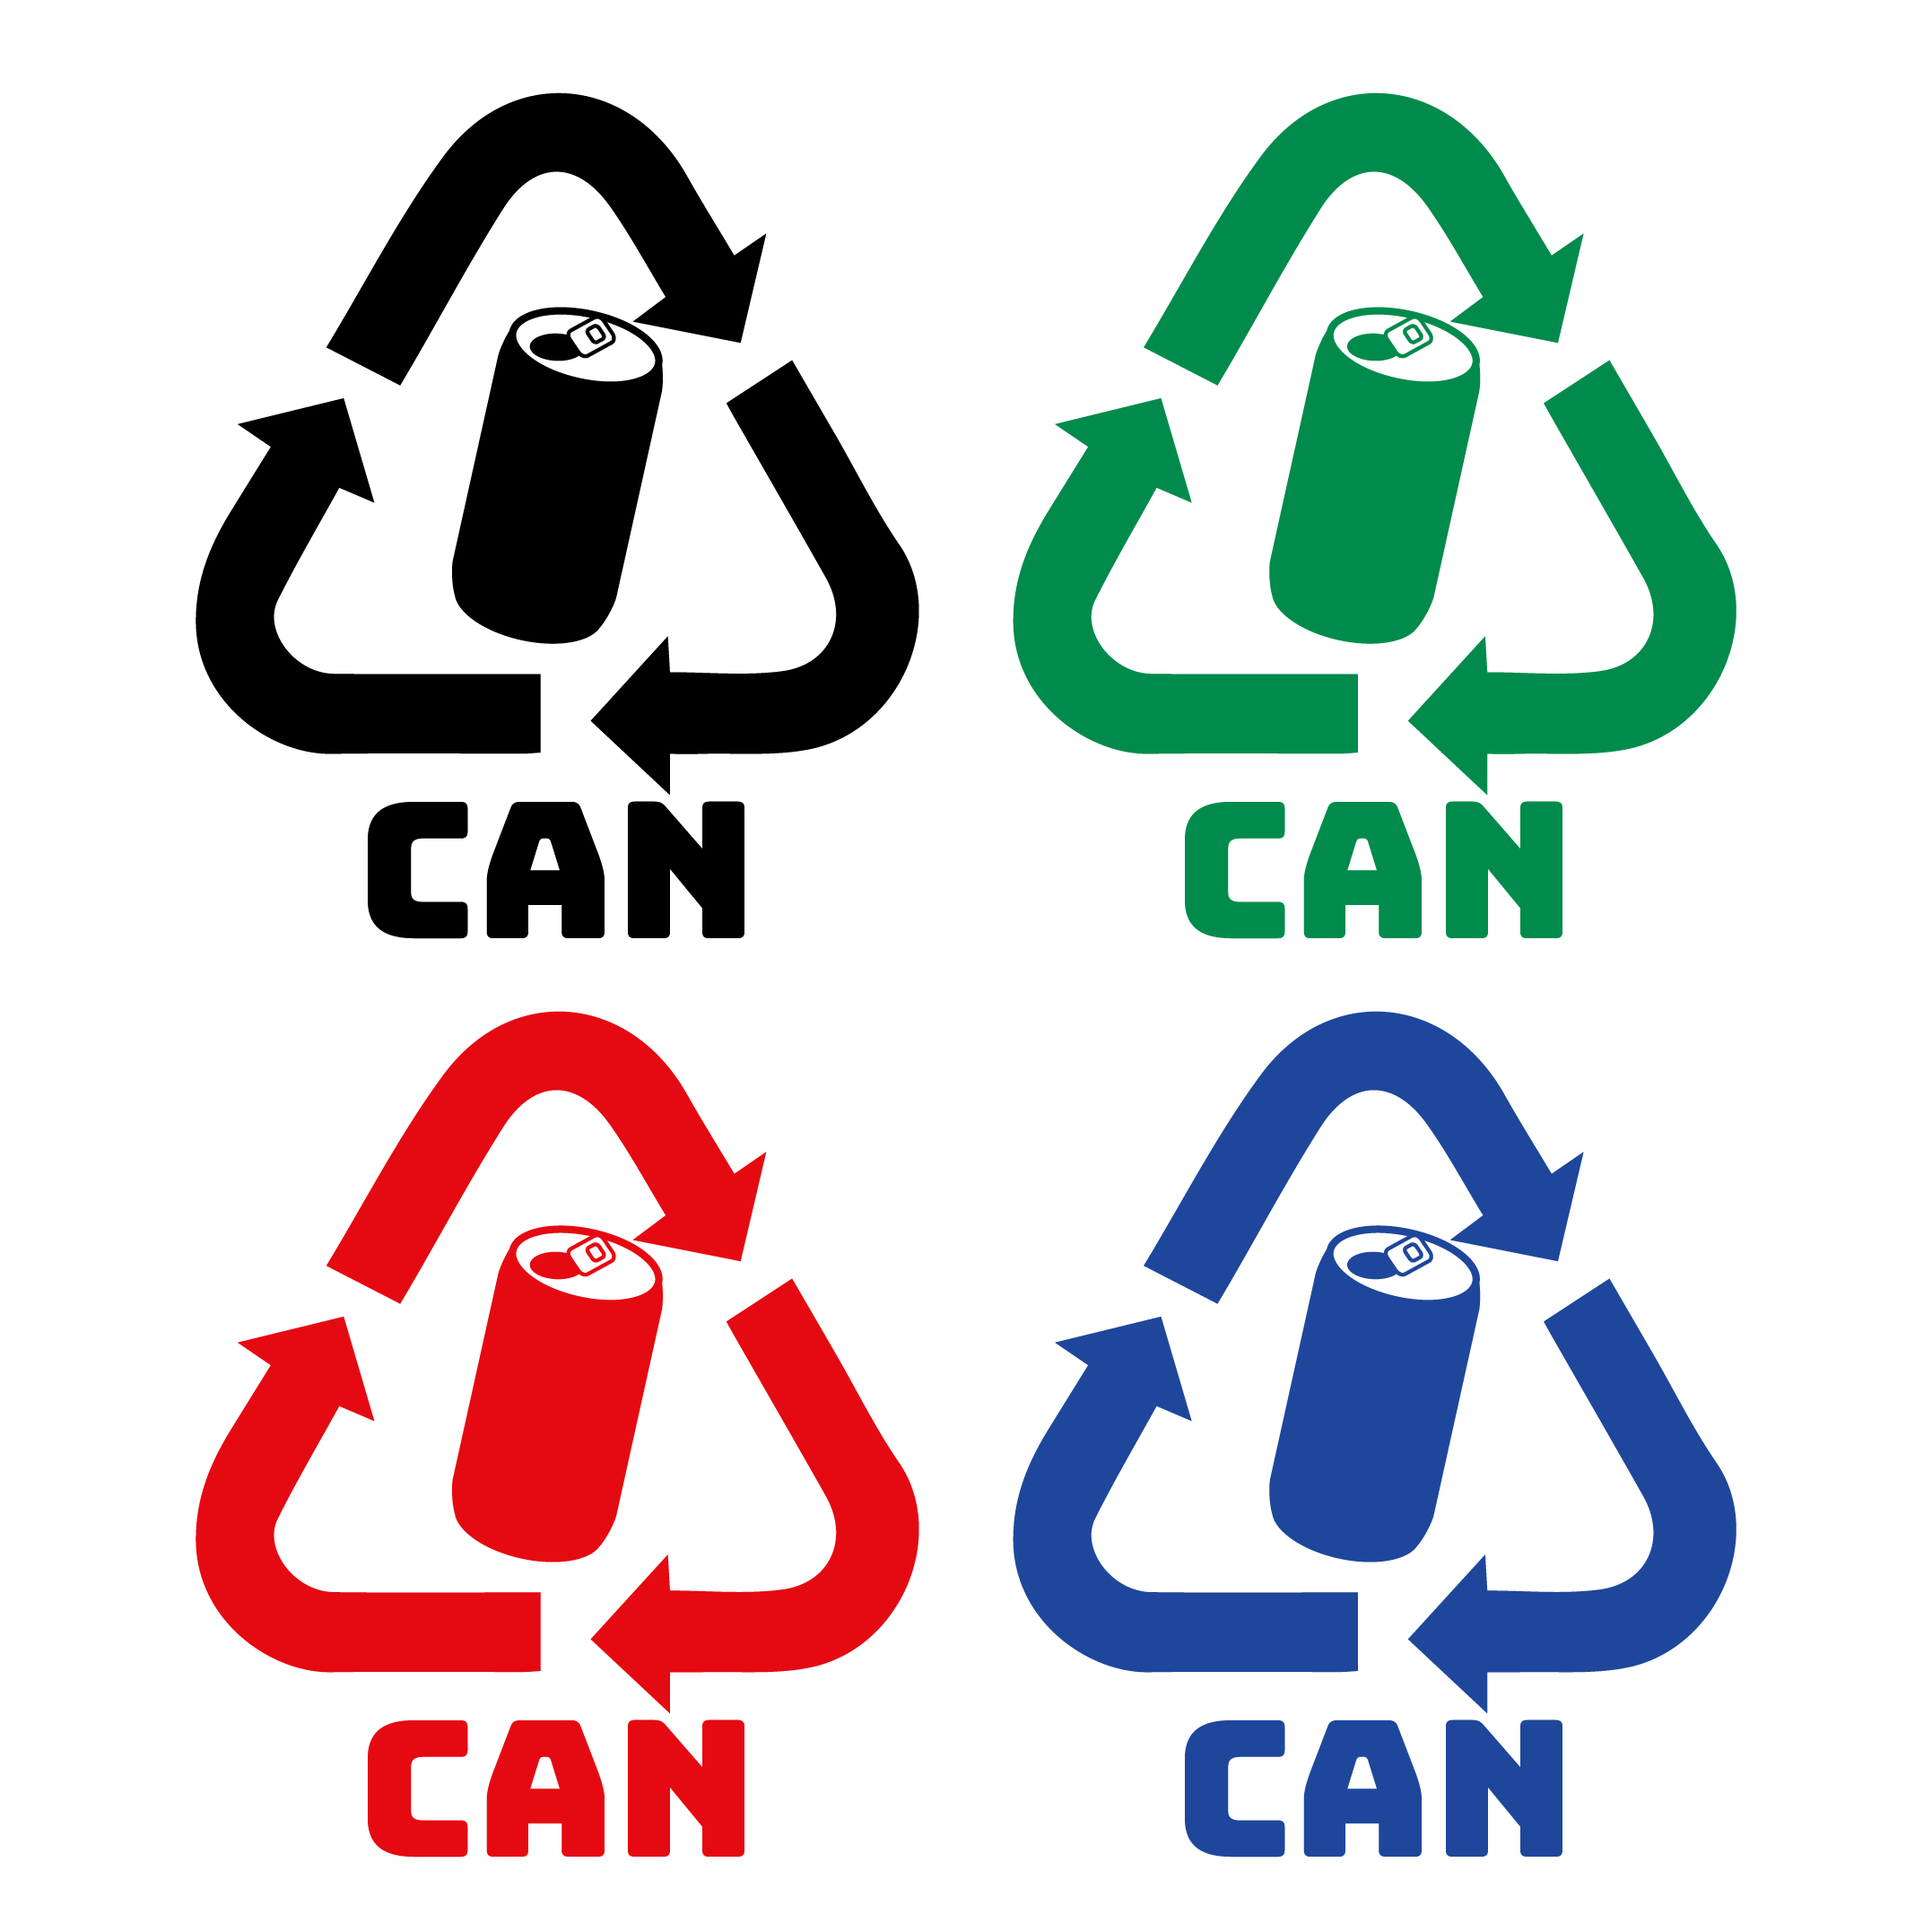 缶のリサイクルマークのイラスト4色【ゴミの分別】 | 商用フリー(無料)のイラスト素材なら「イラストマンション」